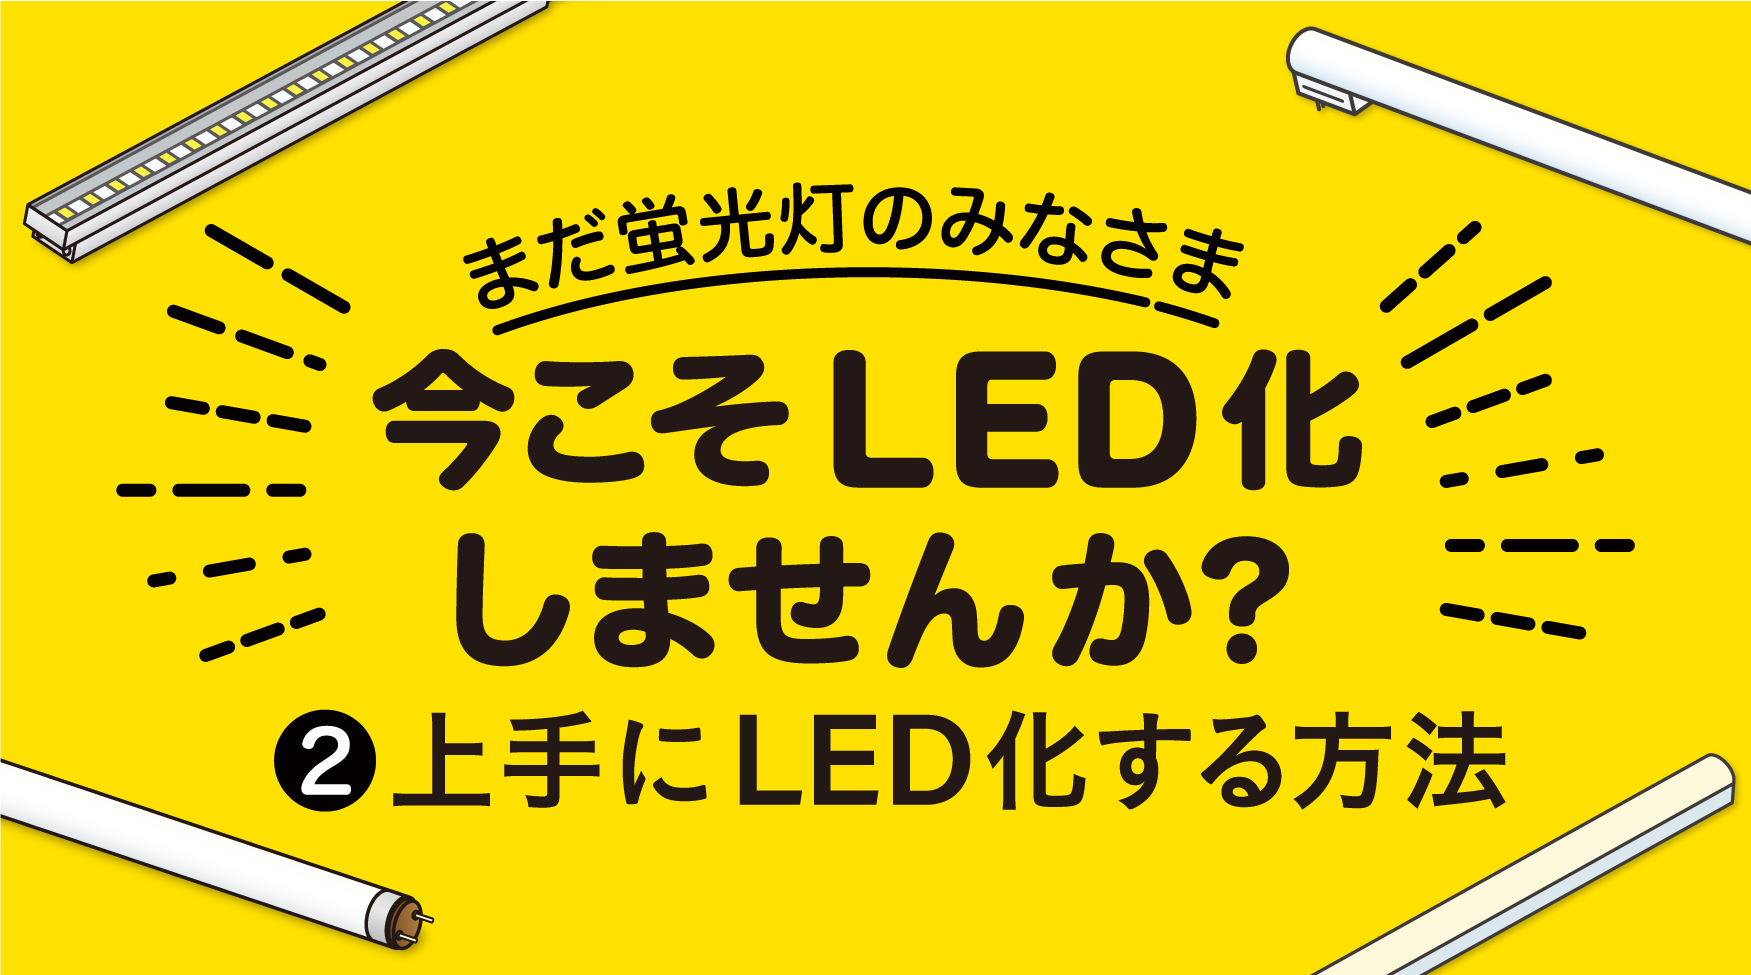 蛍光灯→LED置き換えのご提案 その❷ 〜上手にLED化する方法〜